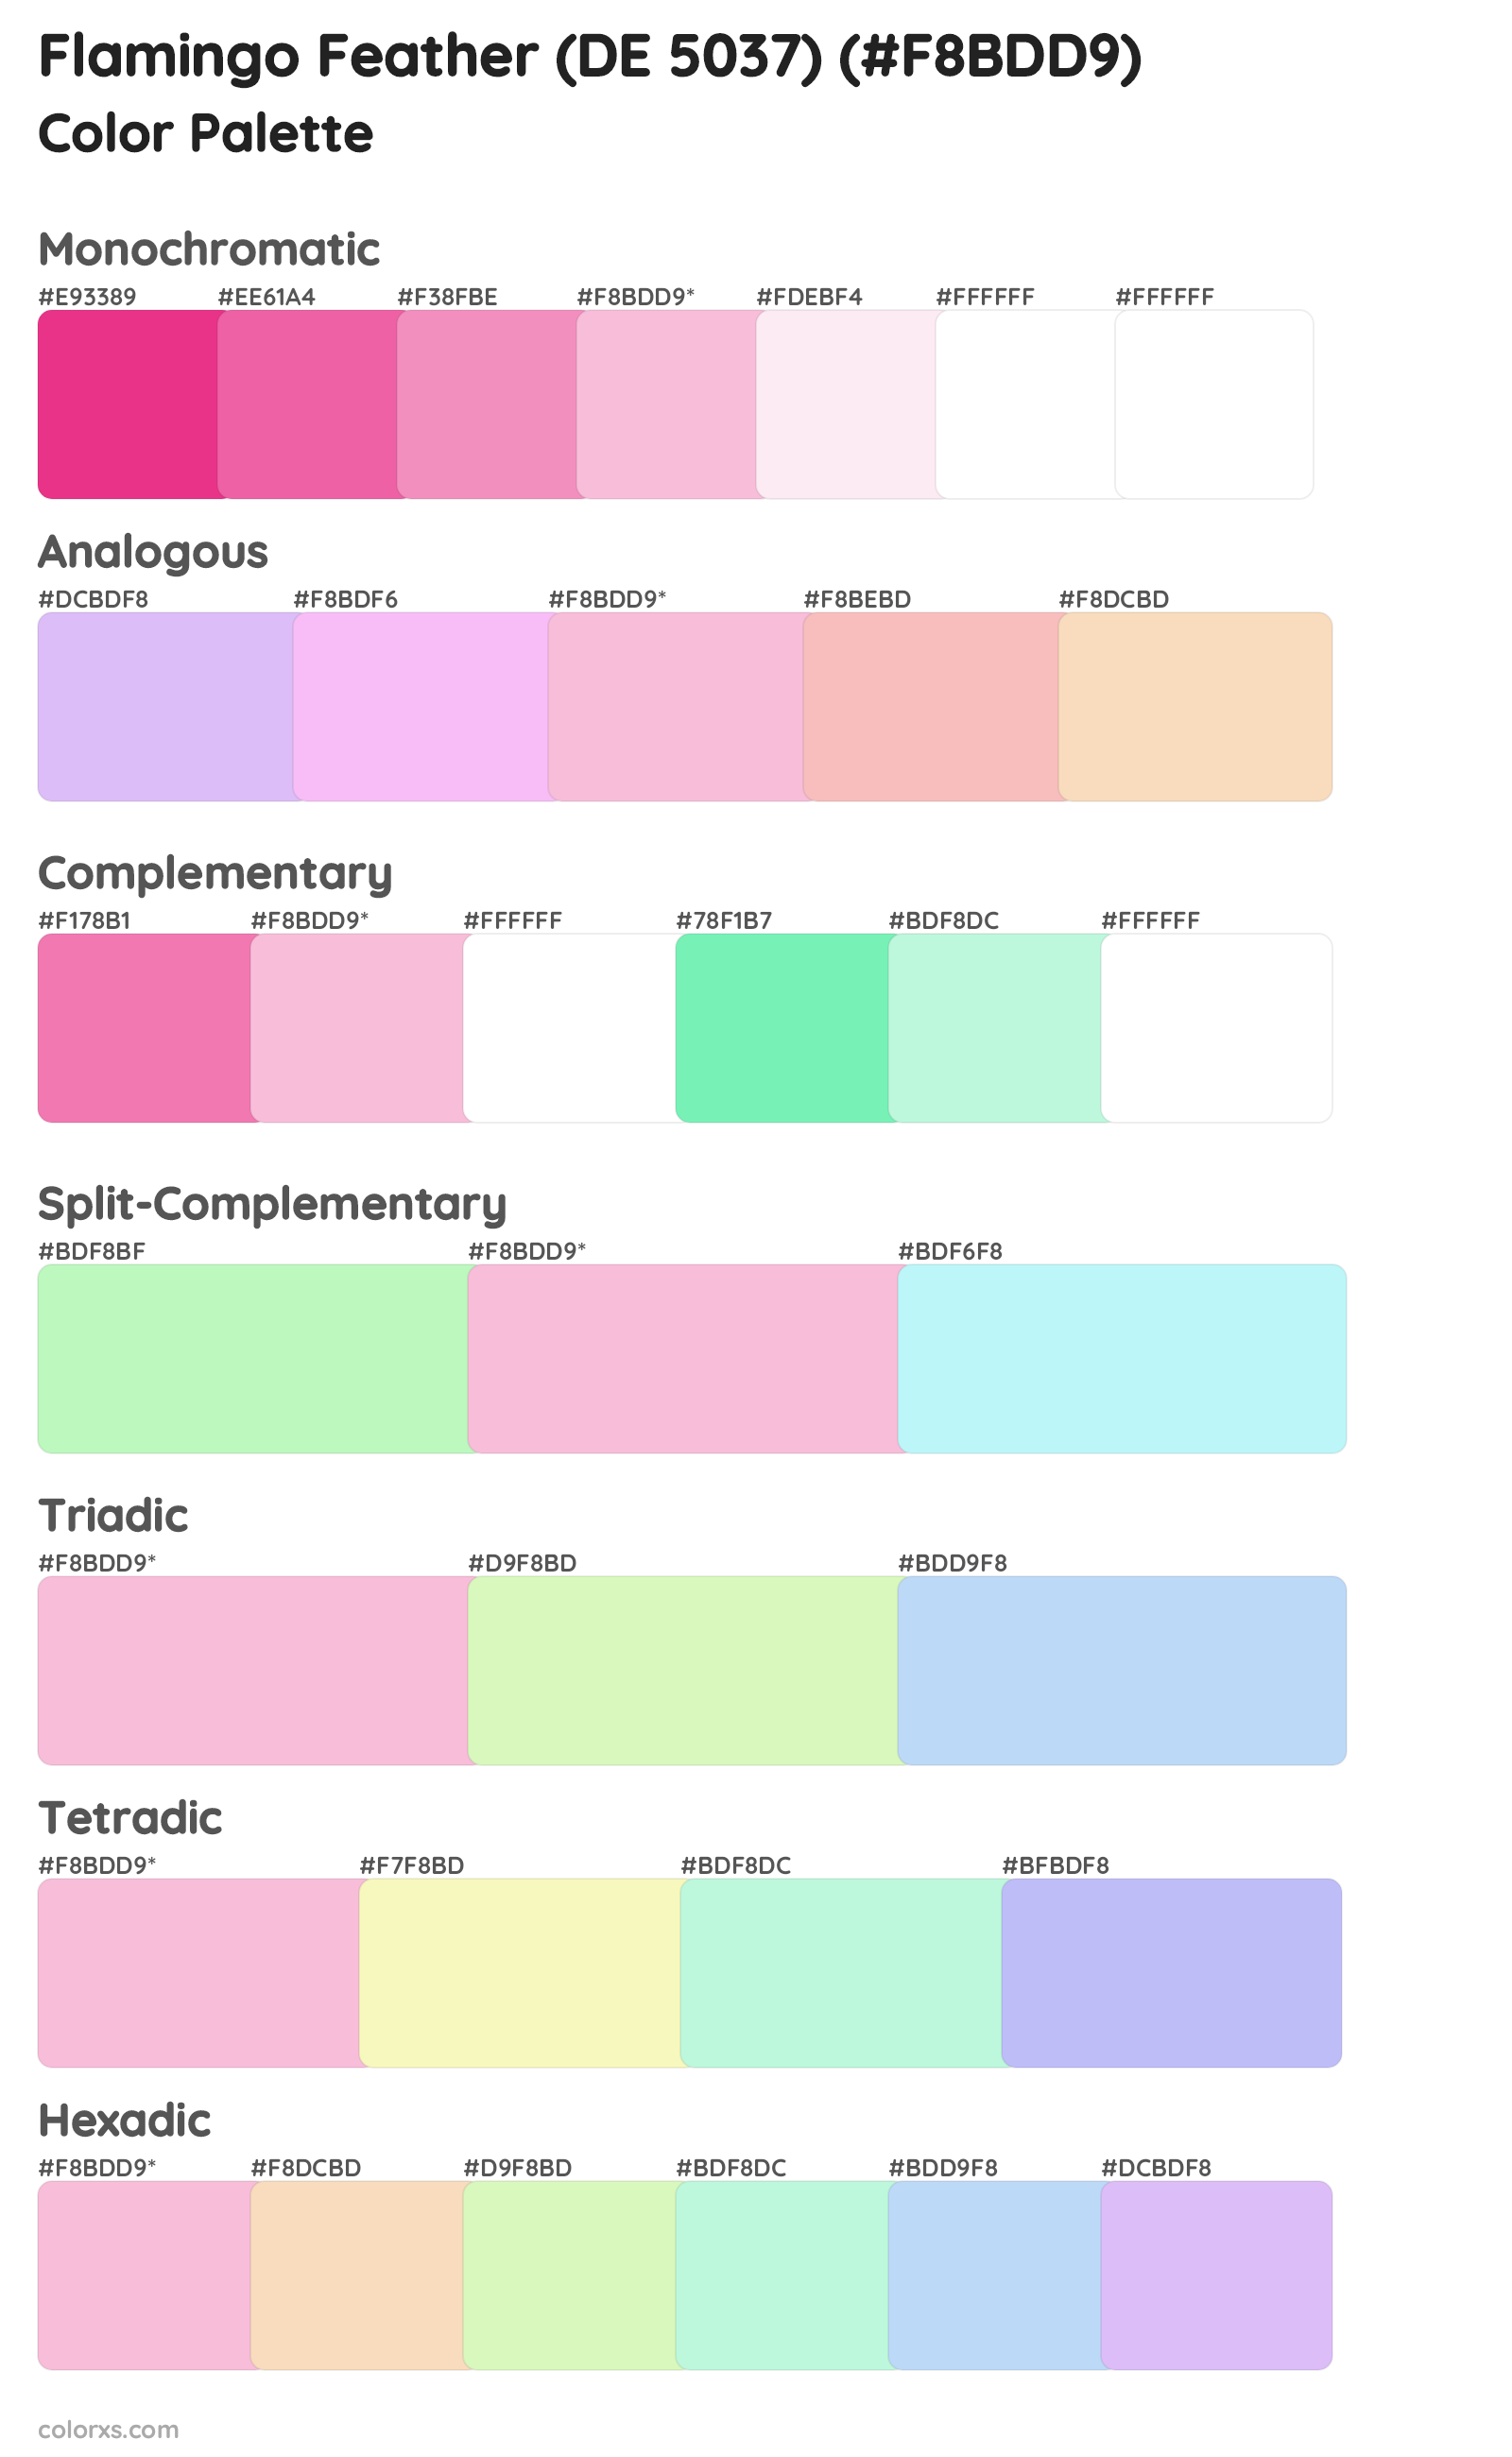 Flamingo Feather (DE 5037) Color Scheme Palettes